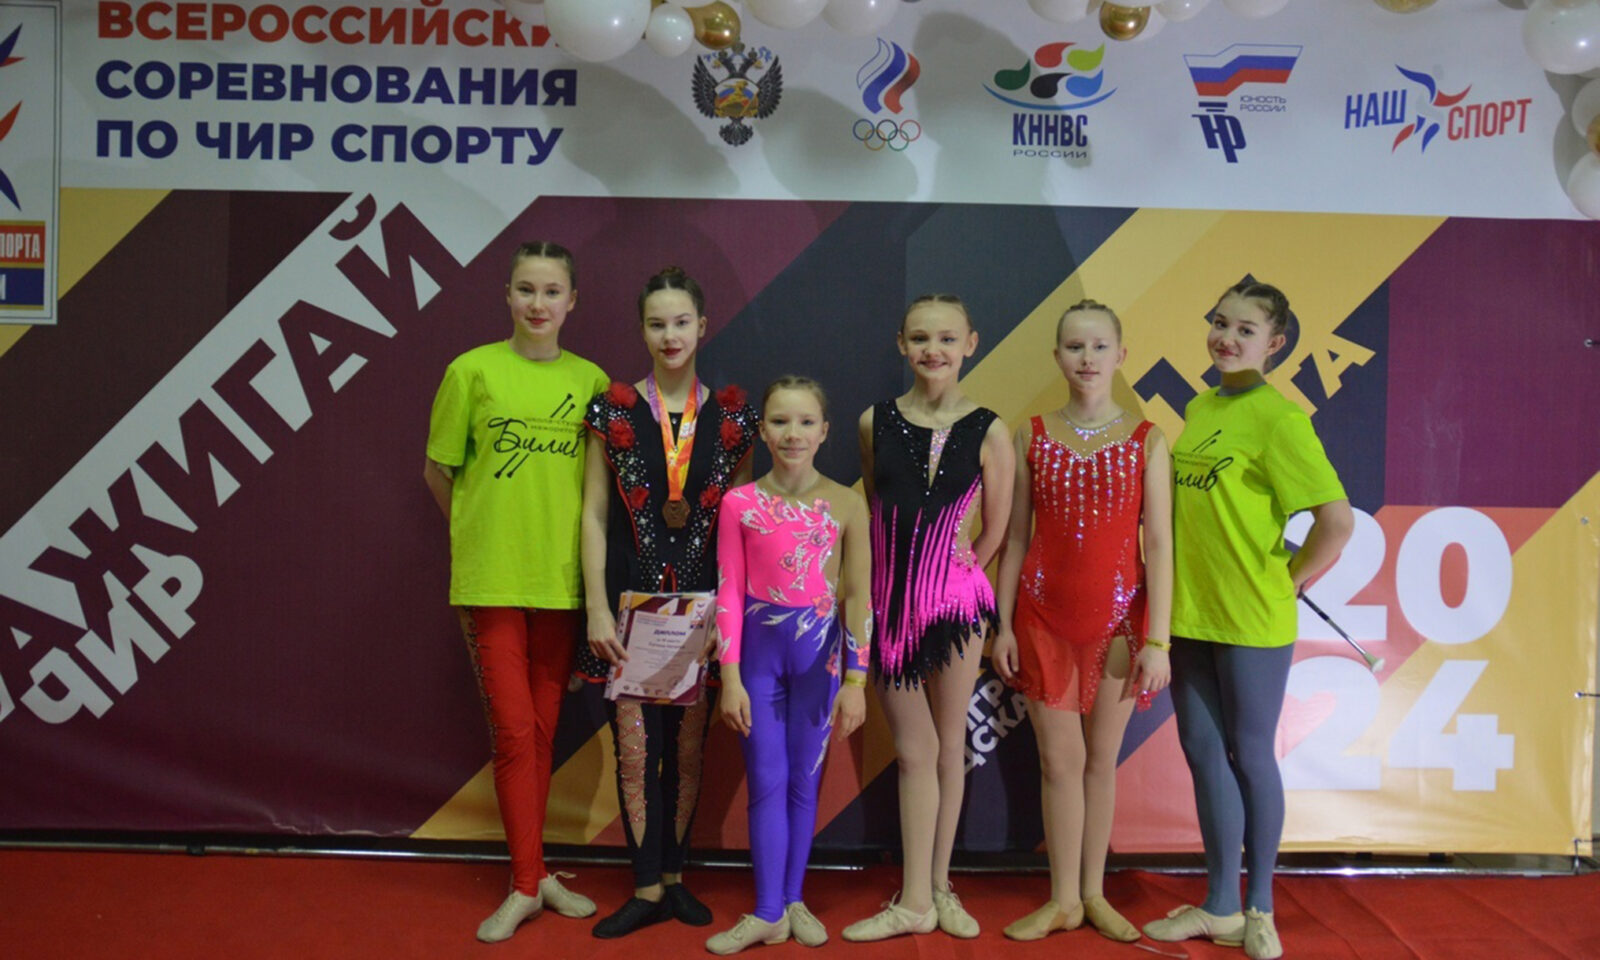 Кимрский коллектив школы-студии мажореток «Билив» на всероссийских соревнованиях по чирспорту